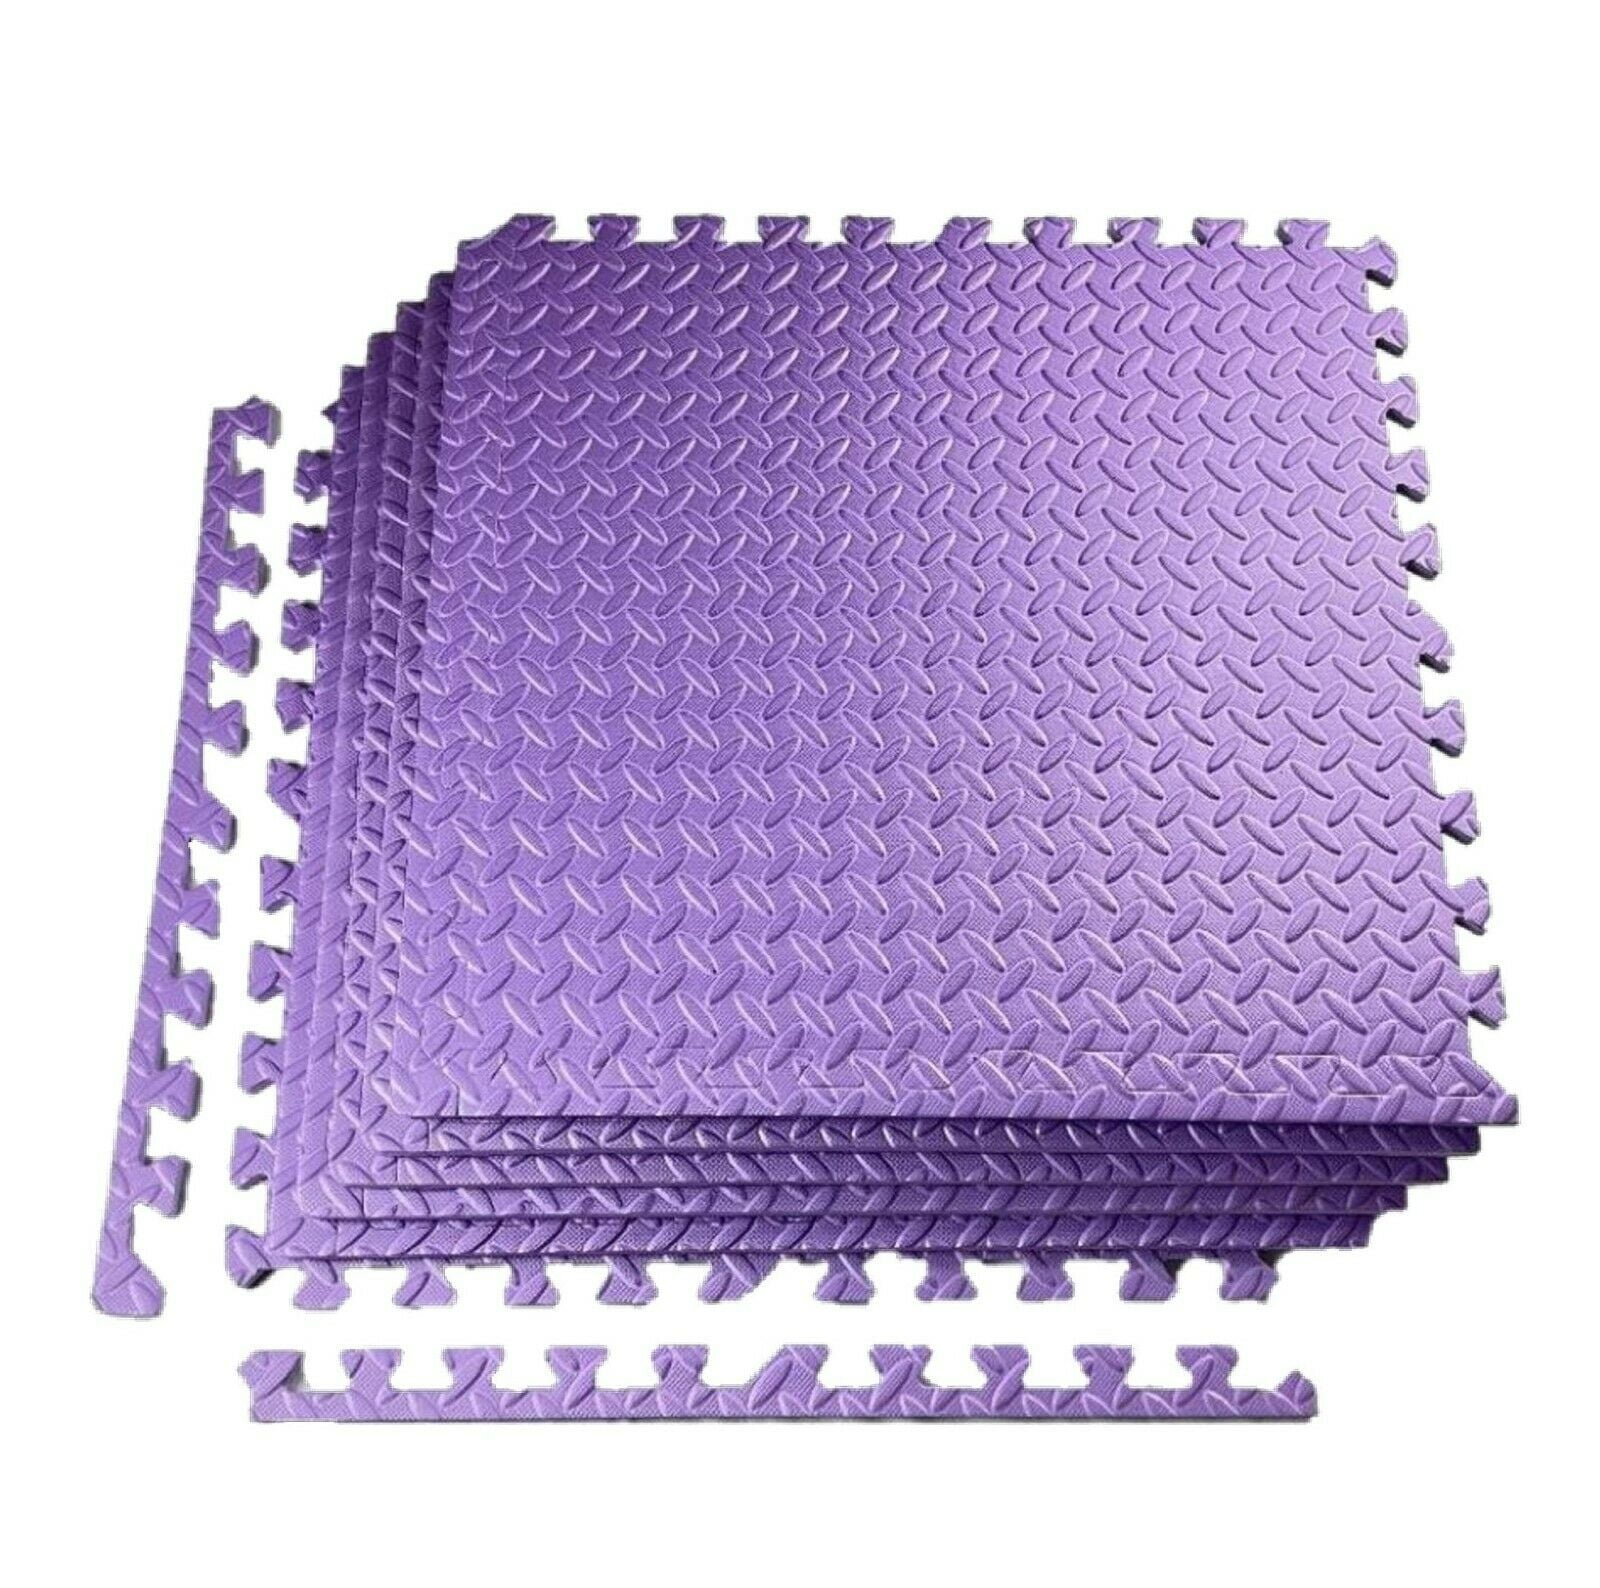 216 sqft purple interlocking foam floor puzzle tile mat puzzle mat flooring 